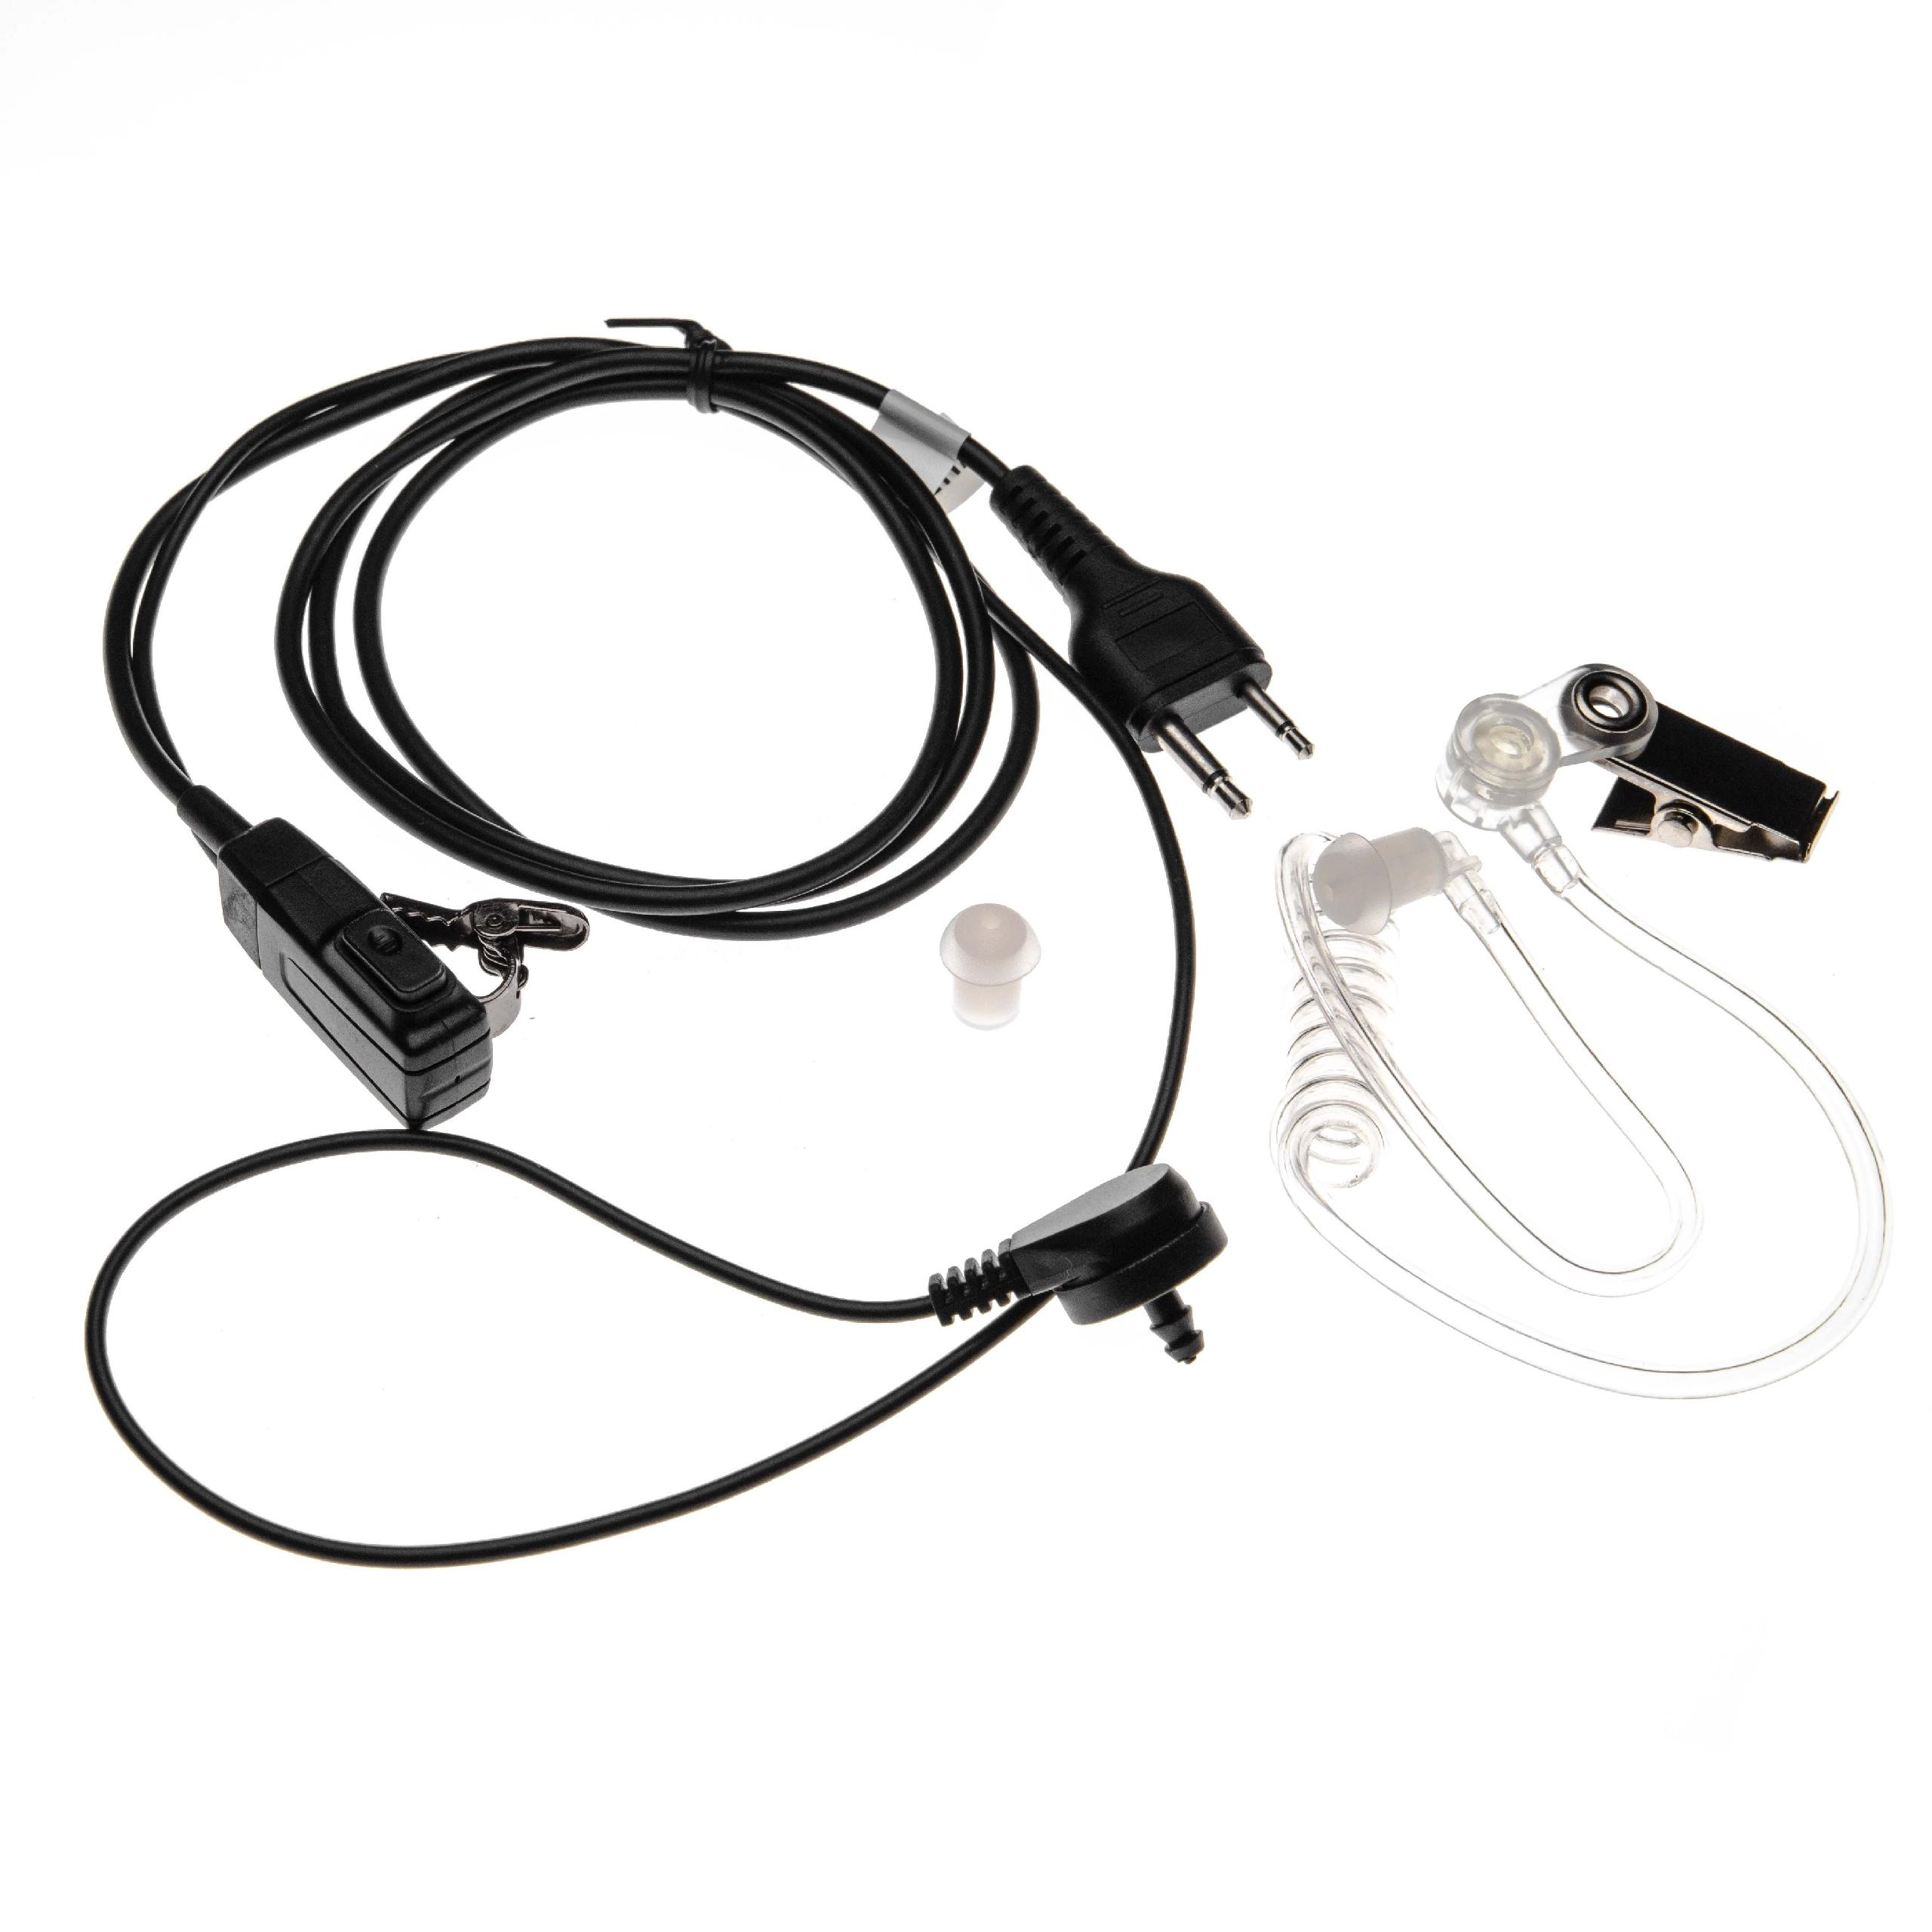 VHBW kompatibel mit Icom IC-T42E, IC-T7, transparent / IC-T3H, IC-T41E, IC-T41A, schwarz On-ear IC-T42A, IC-T42, IC-T31CP, Headset IC-T2H